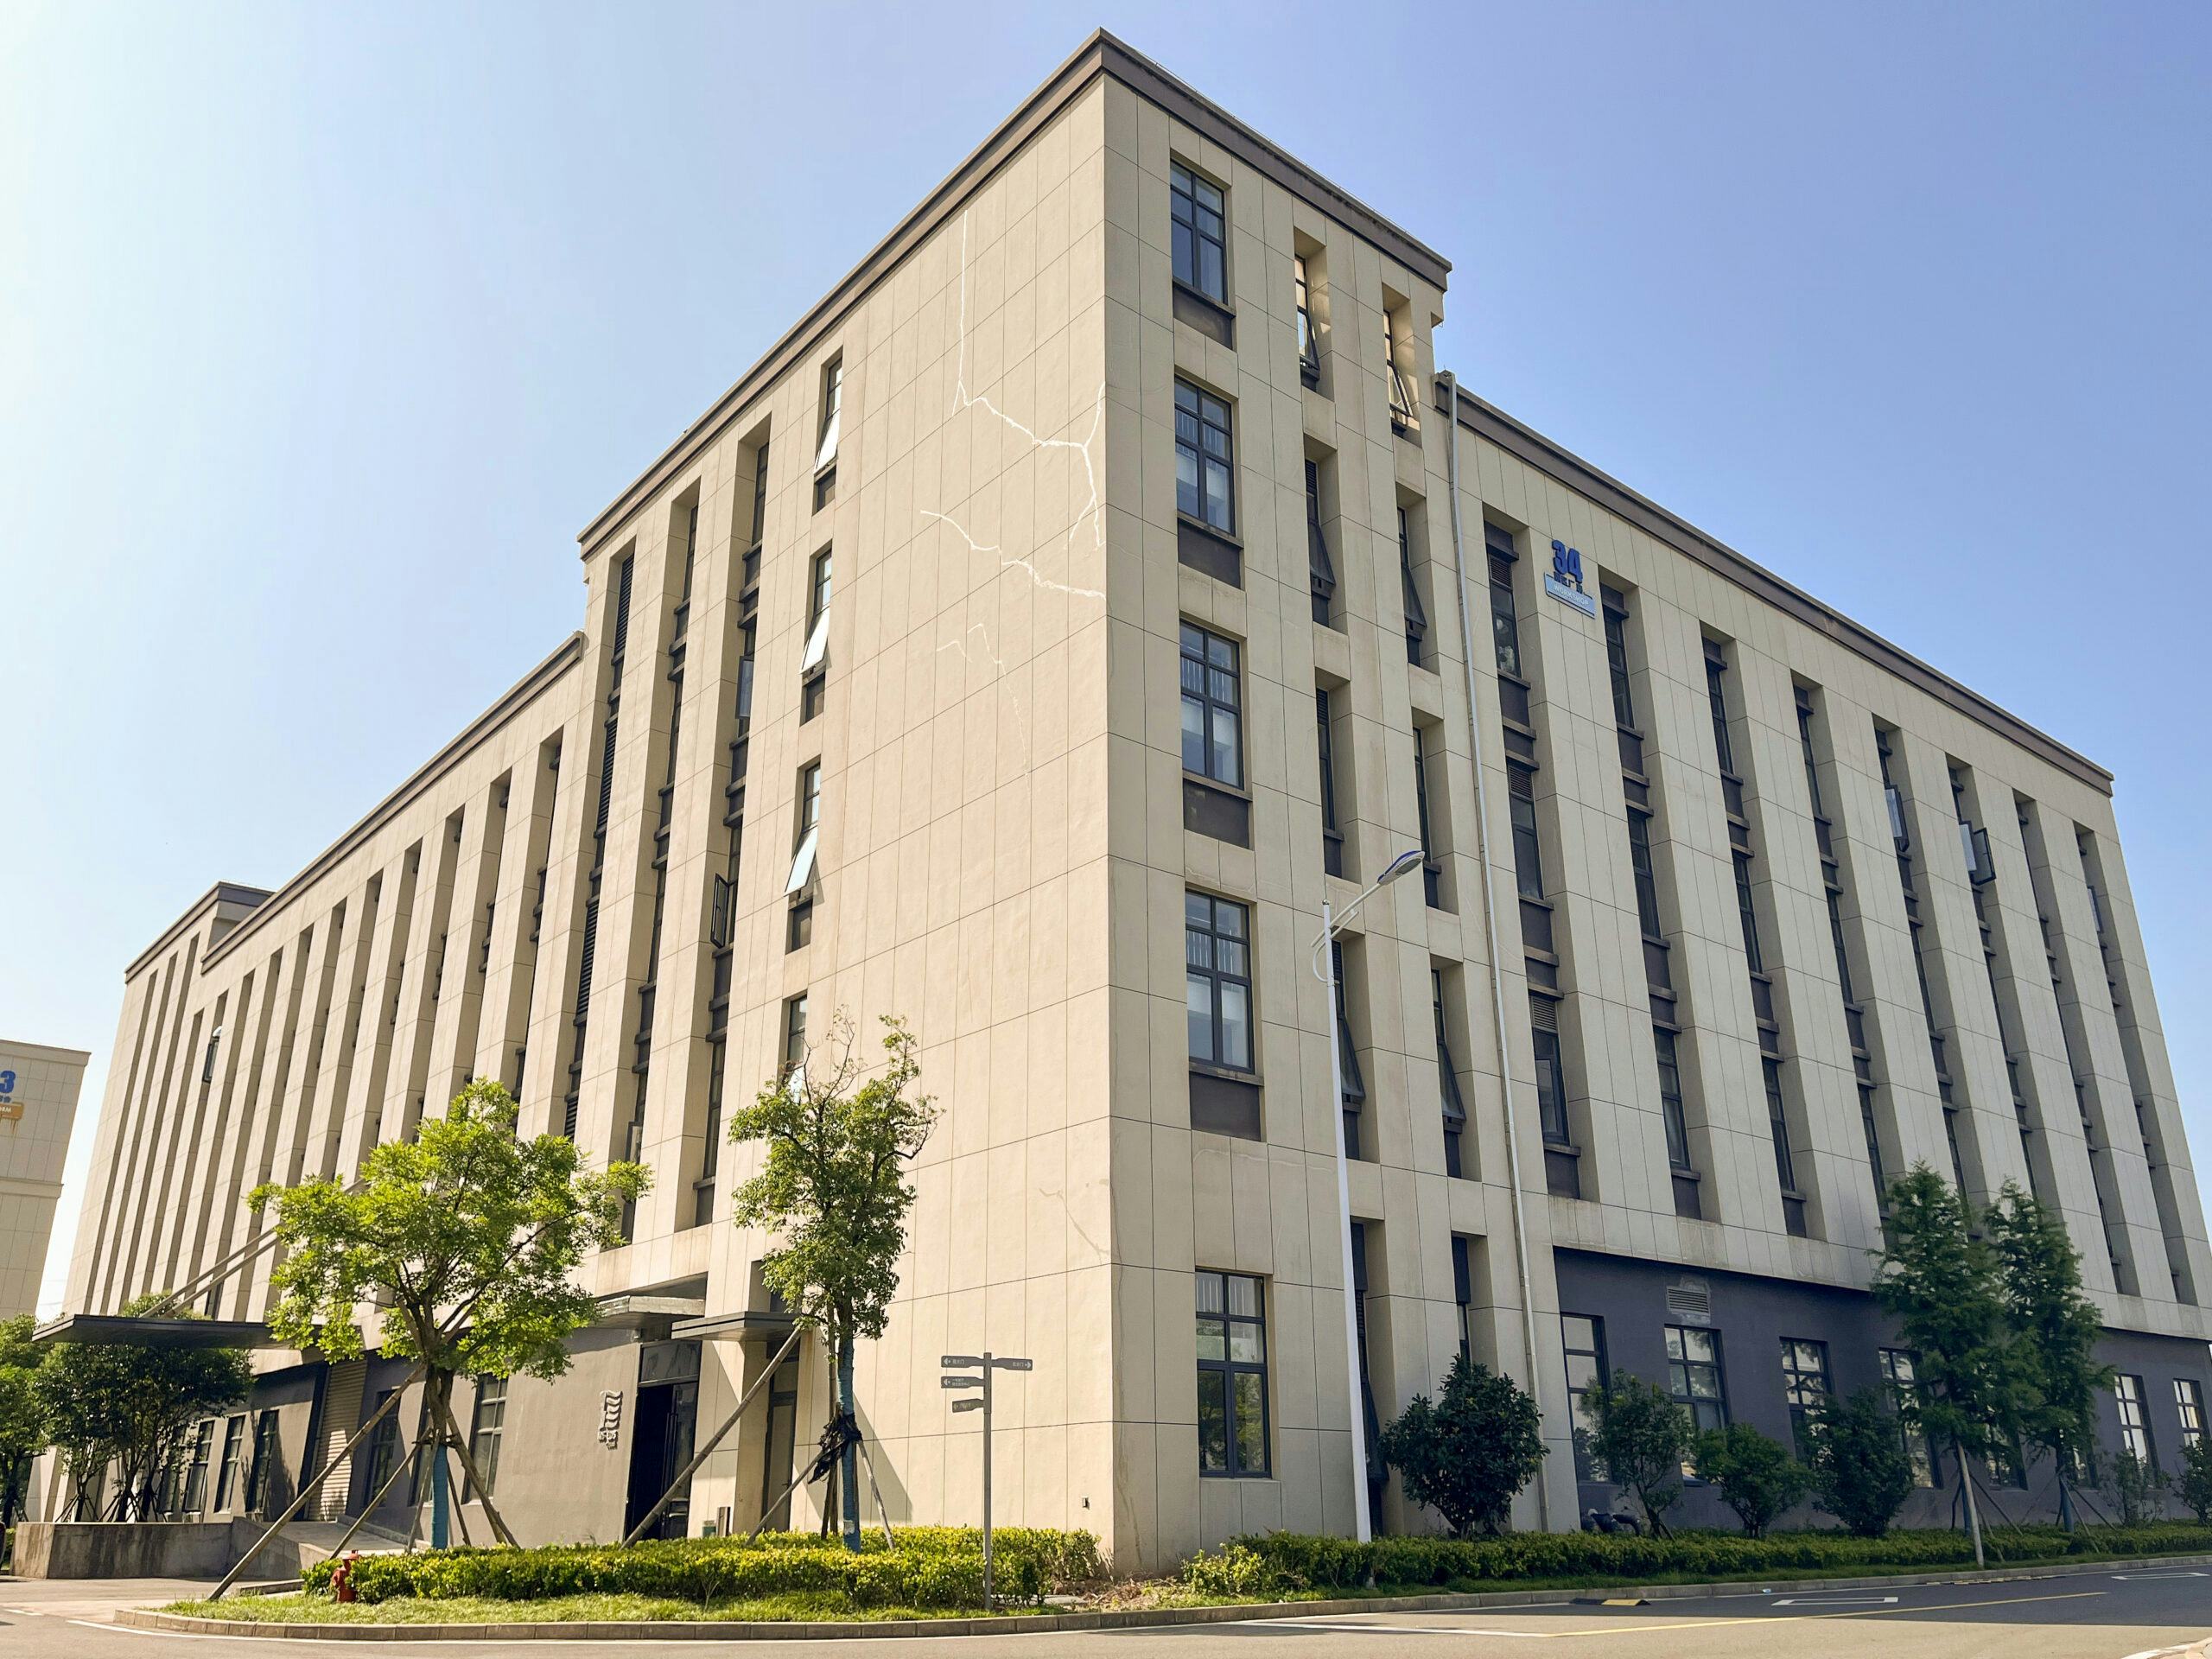 Mivice's headquarters in Ningbo, China.